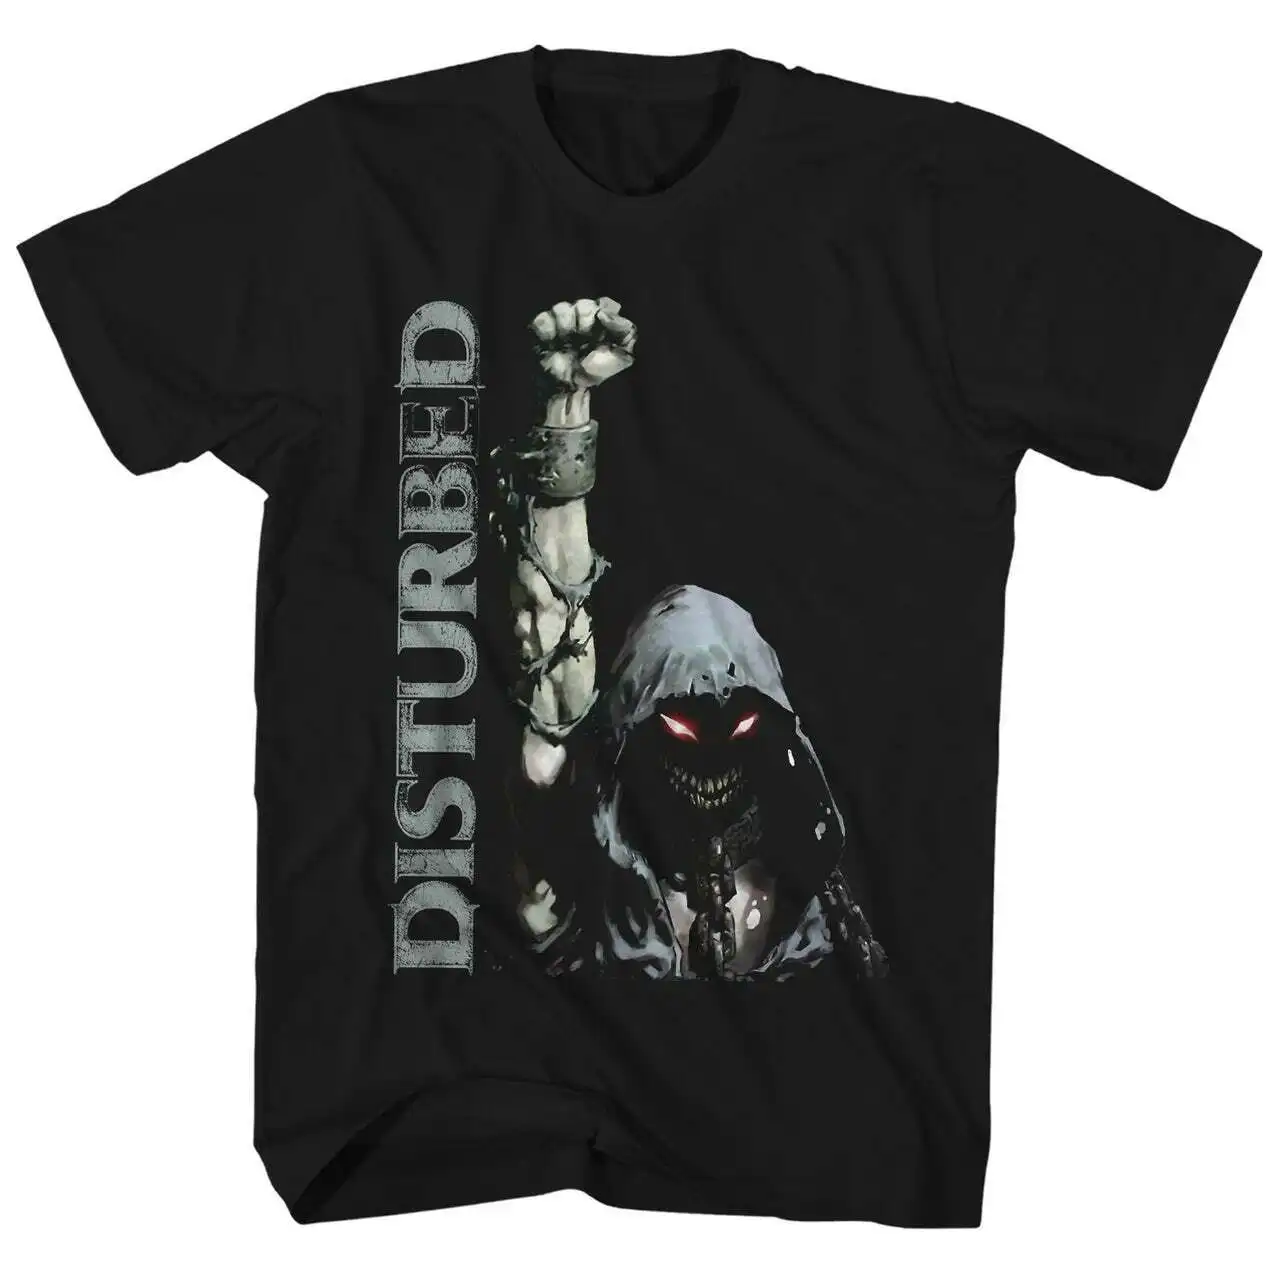 

Мужская Лицензированная футболка с надписью crackup Yer Fist, черная футболка в стиле рок-н-ролл для музыкального концерта